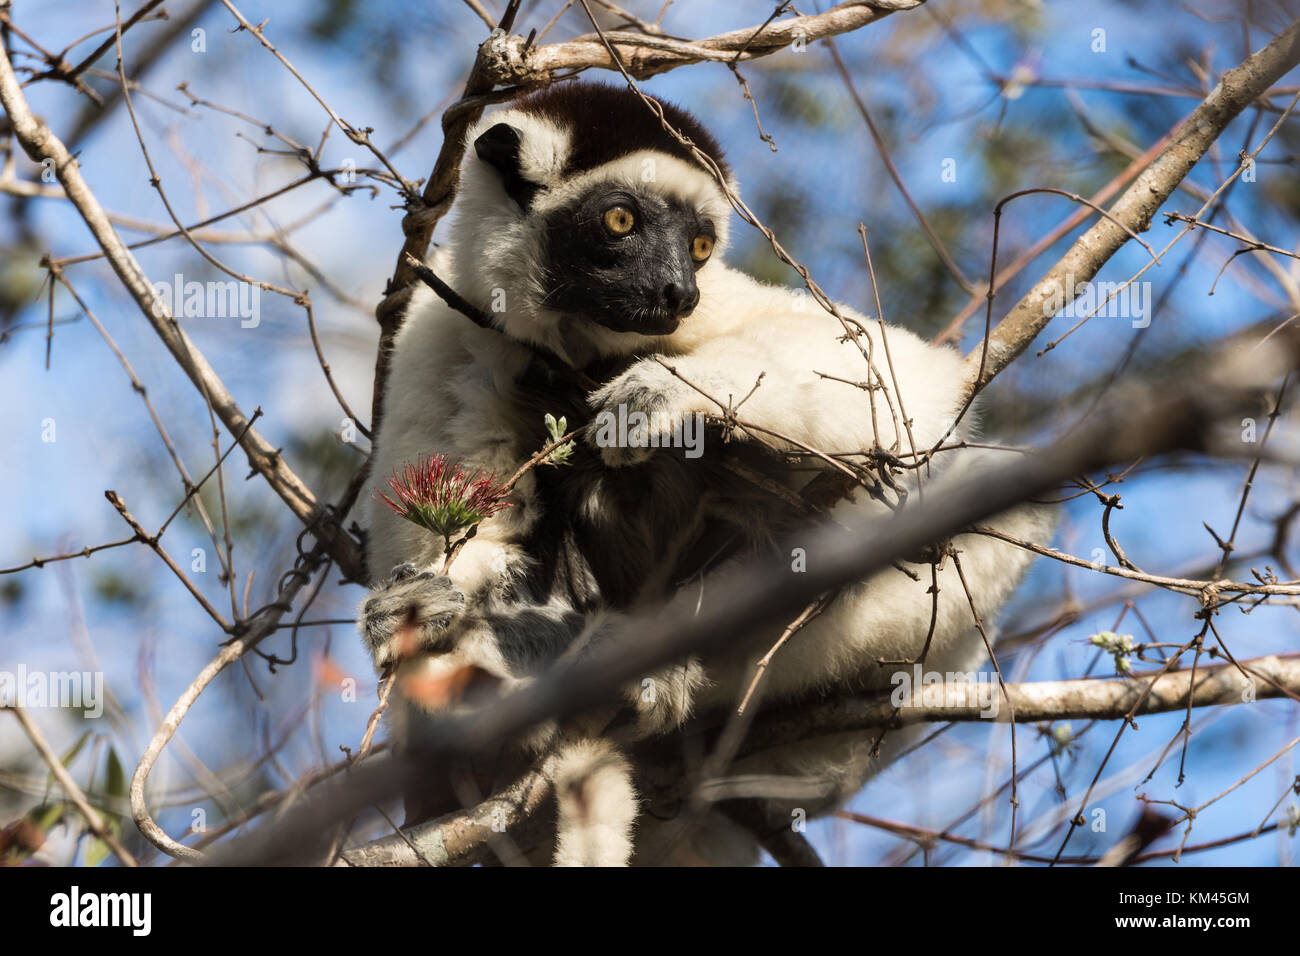 Alimentation sifaka sur un arbre. Madagascar, Afrique. Banque D'Images